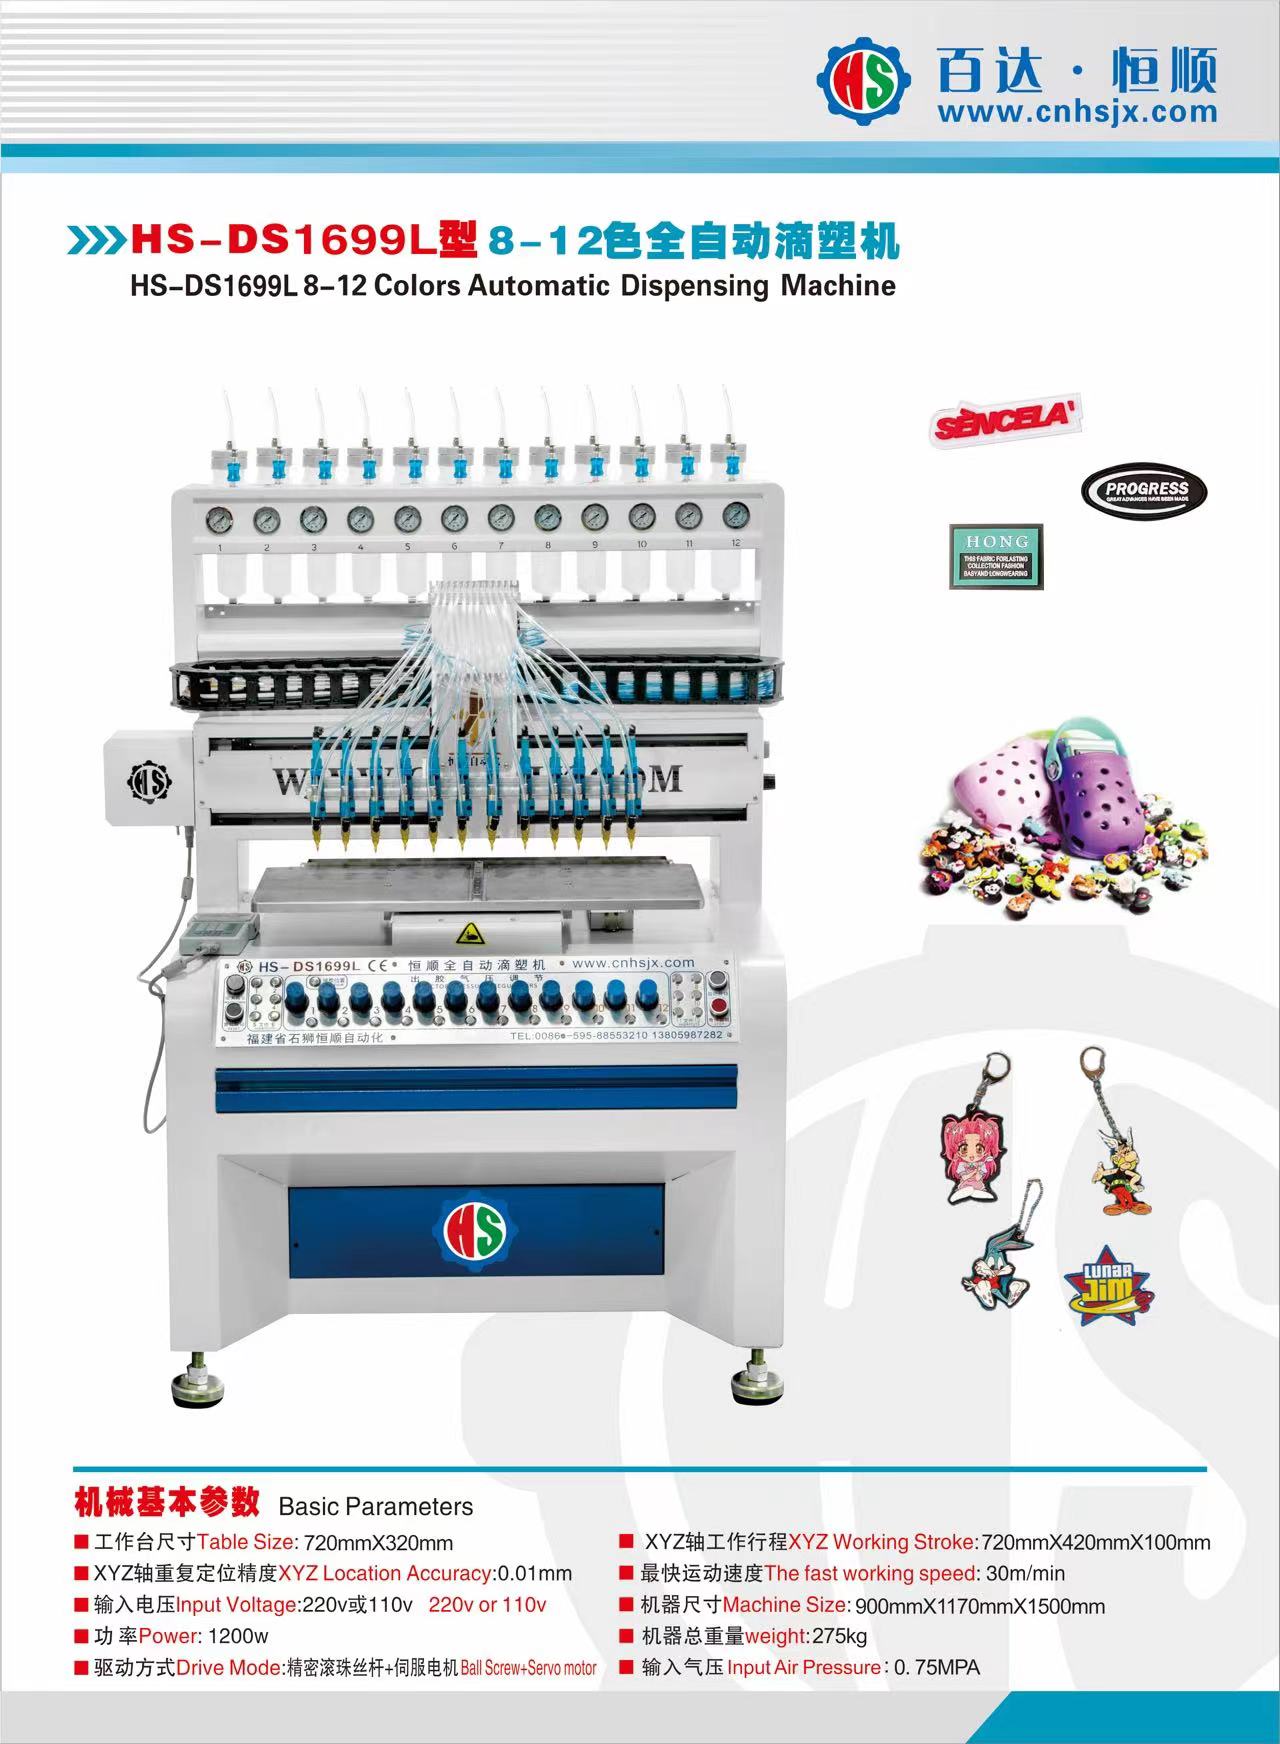 HS-DS1699L 8-12 Colors Automatic Dispensing Machine